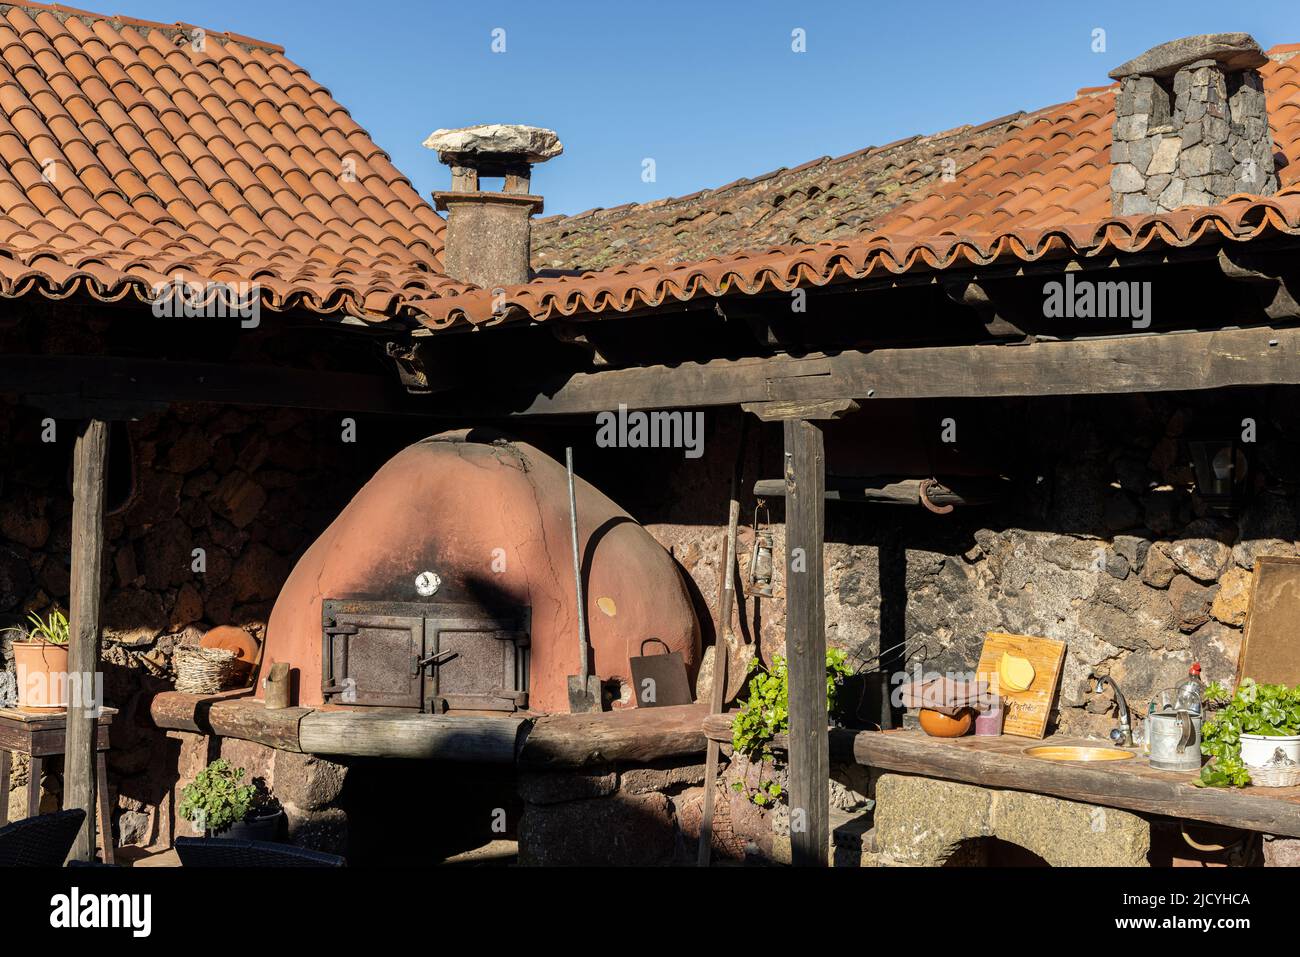 Outdoor oven at the Rural hotel, Caserio Los Partidos, El Tanque, near Santiago del Teide in Tenerife, Canary Islands, Spain Stock Photo